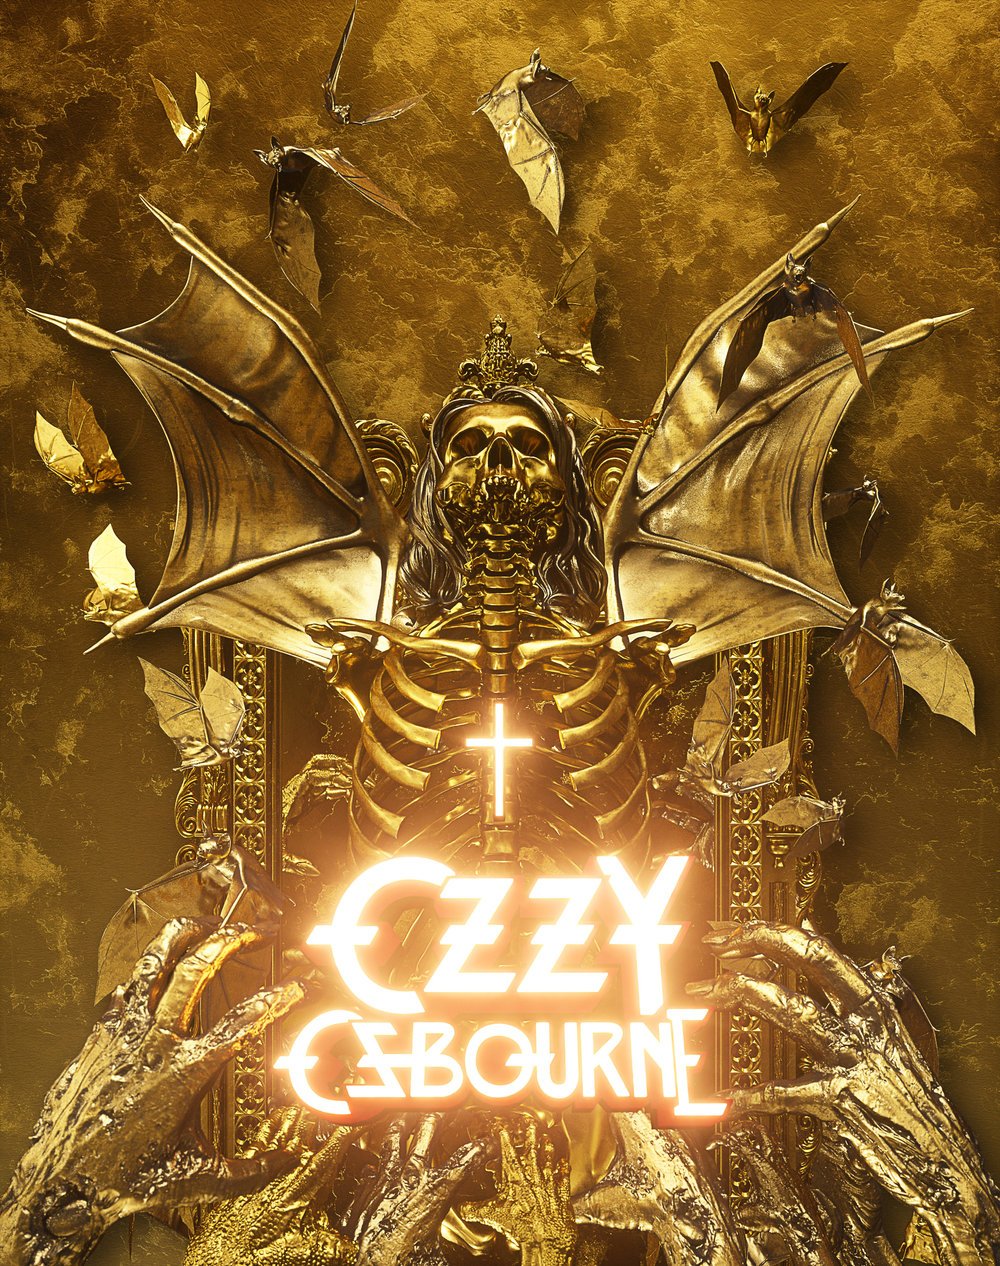 Billelis_Ozzy_Osbourne_Planet_rock_Download_Festival_Magazine_cover_illustration.jpg